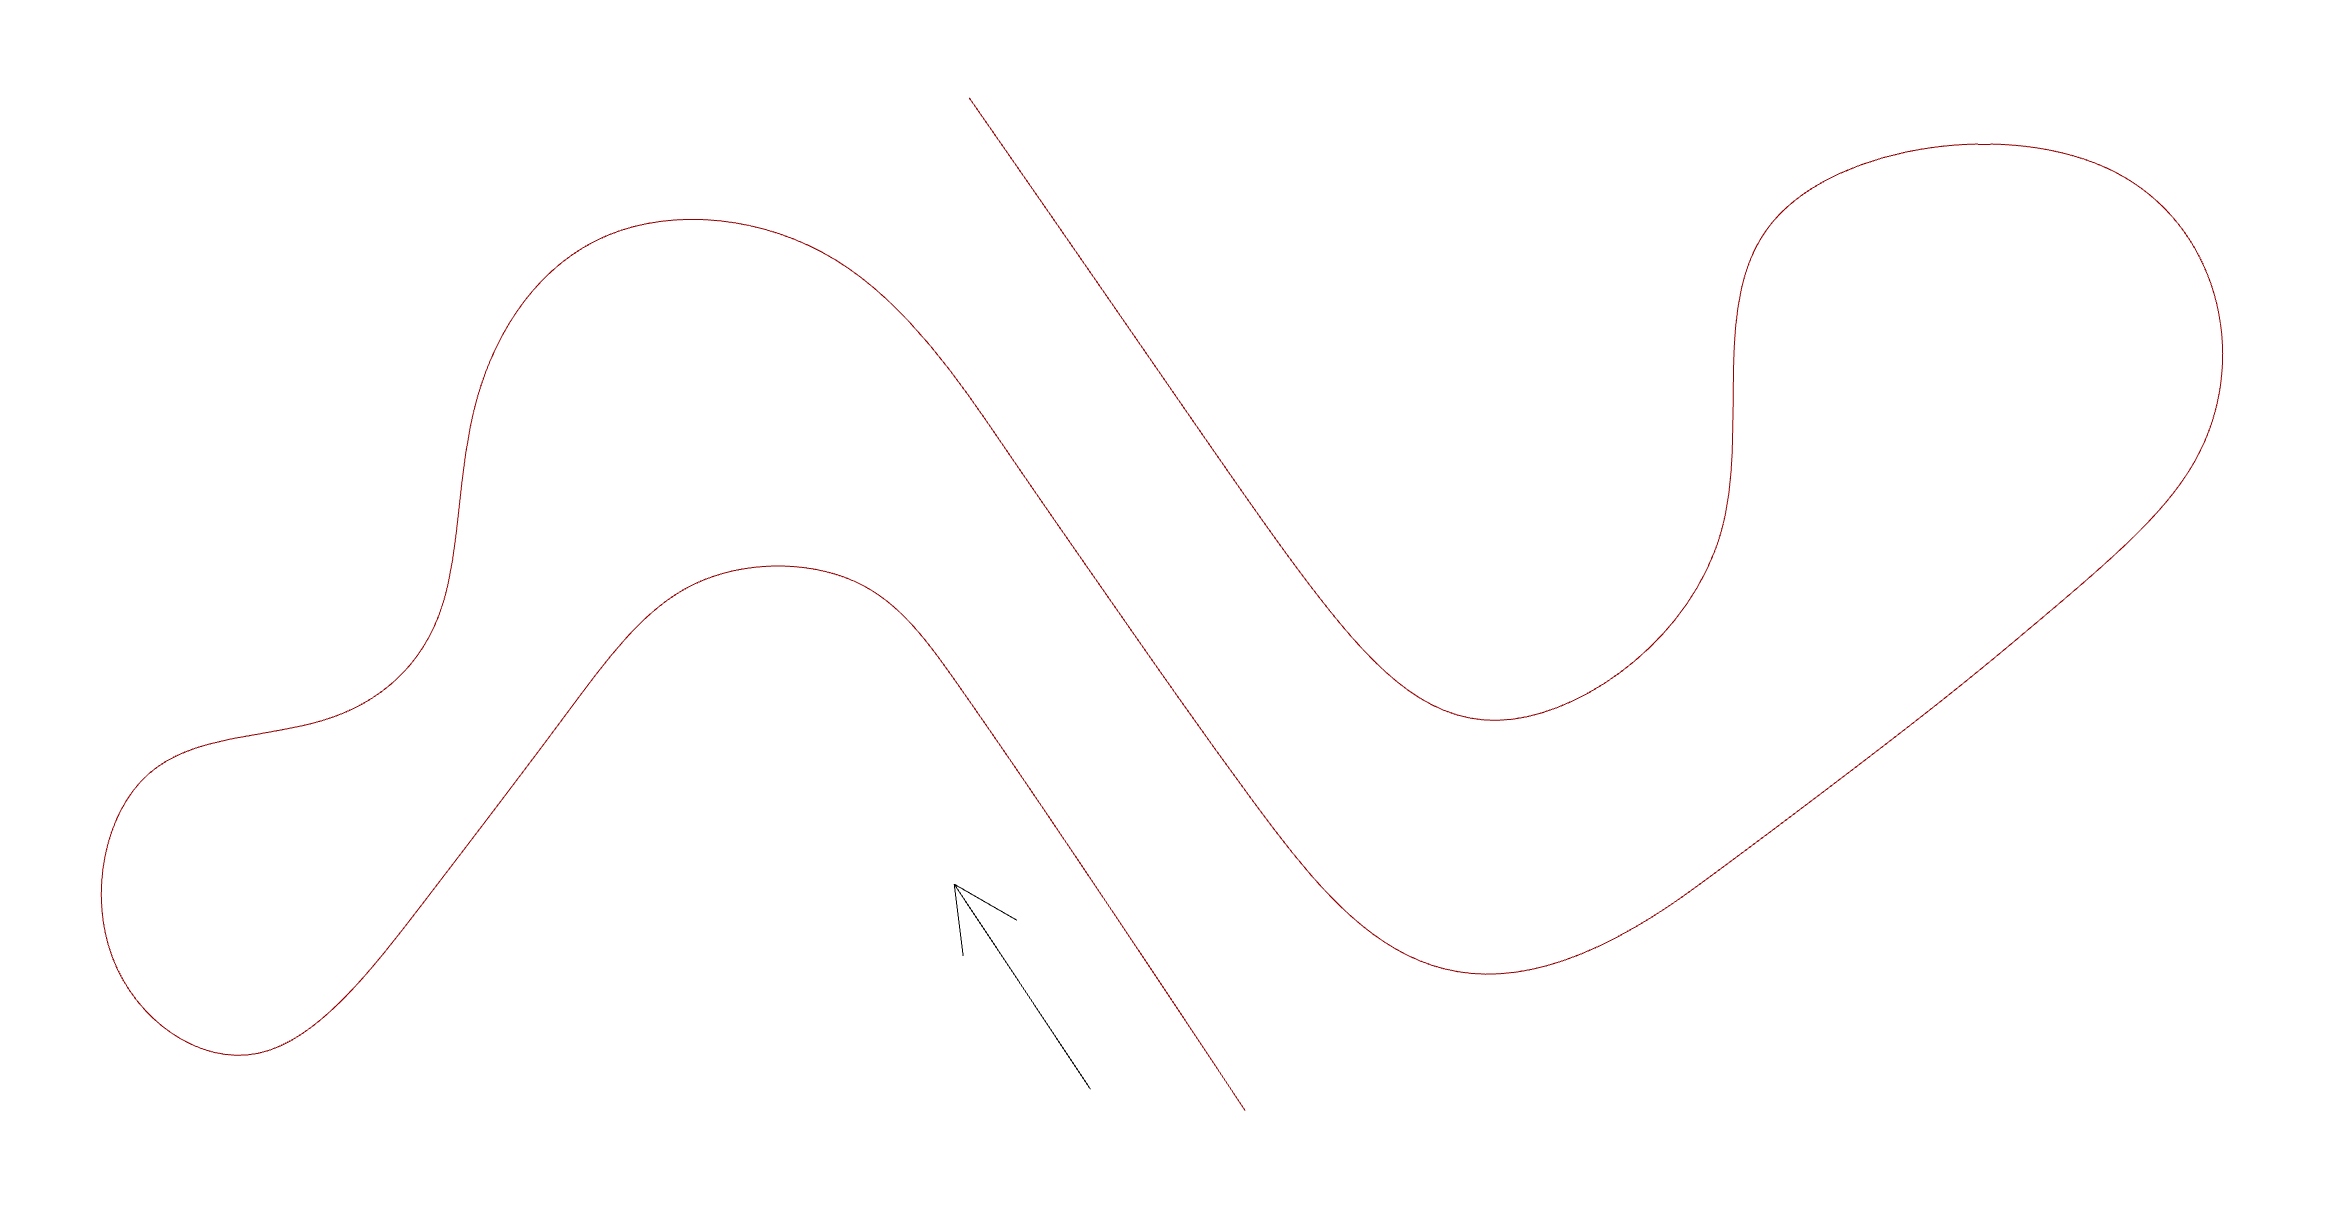 Simple planar curve